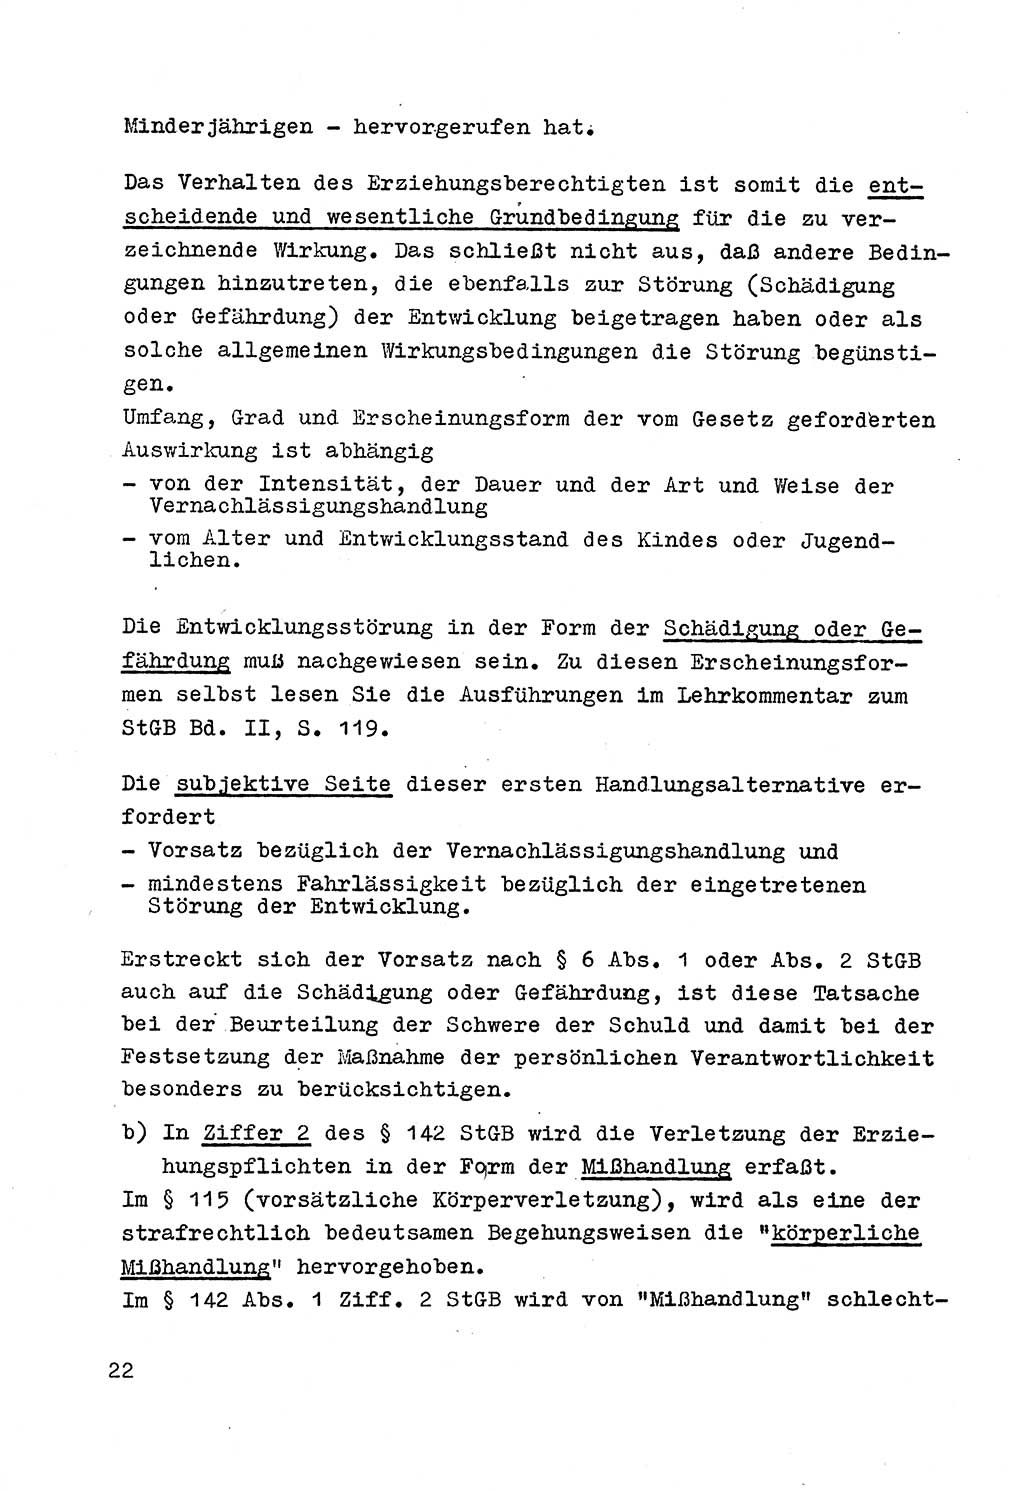 Strafrecht der DDR (Deutsche Demokratische Republik), Besonderer Teil, Lehrmaterial, Heft 4 1969, Seite 22 (Strafr. DDR BT Lehrmat. H. 4 1969, S. 22)